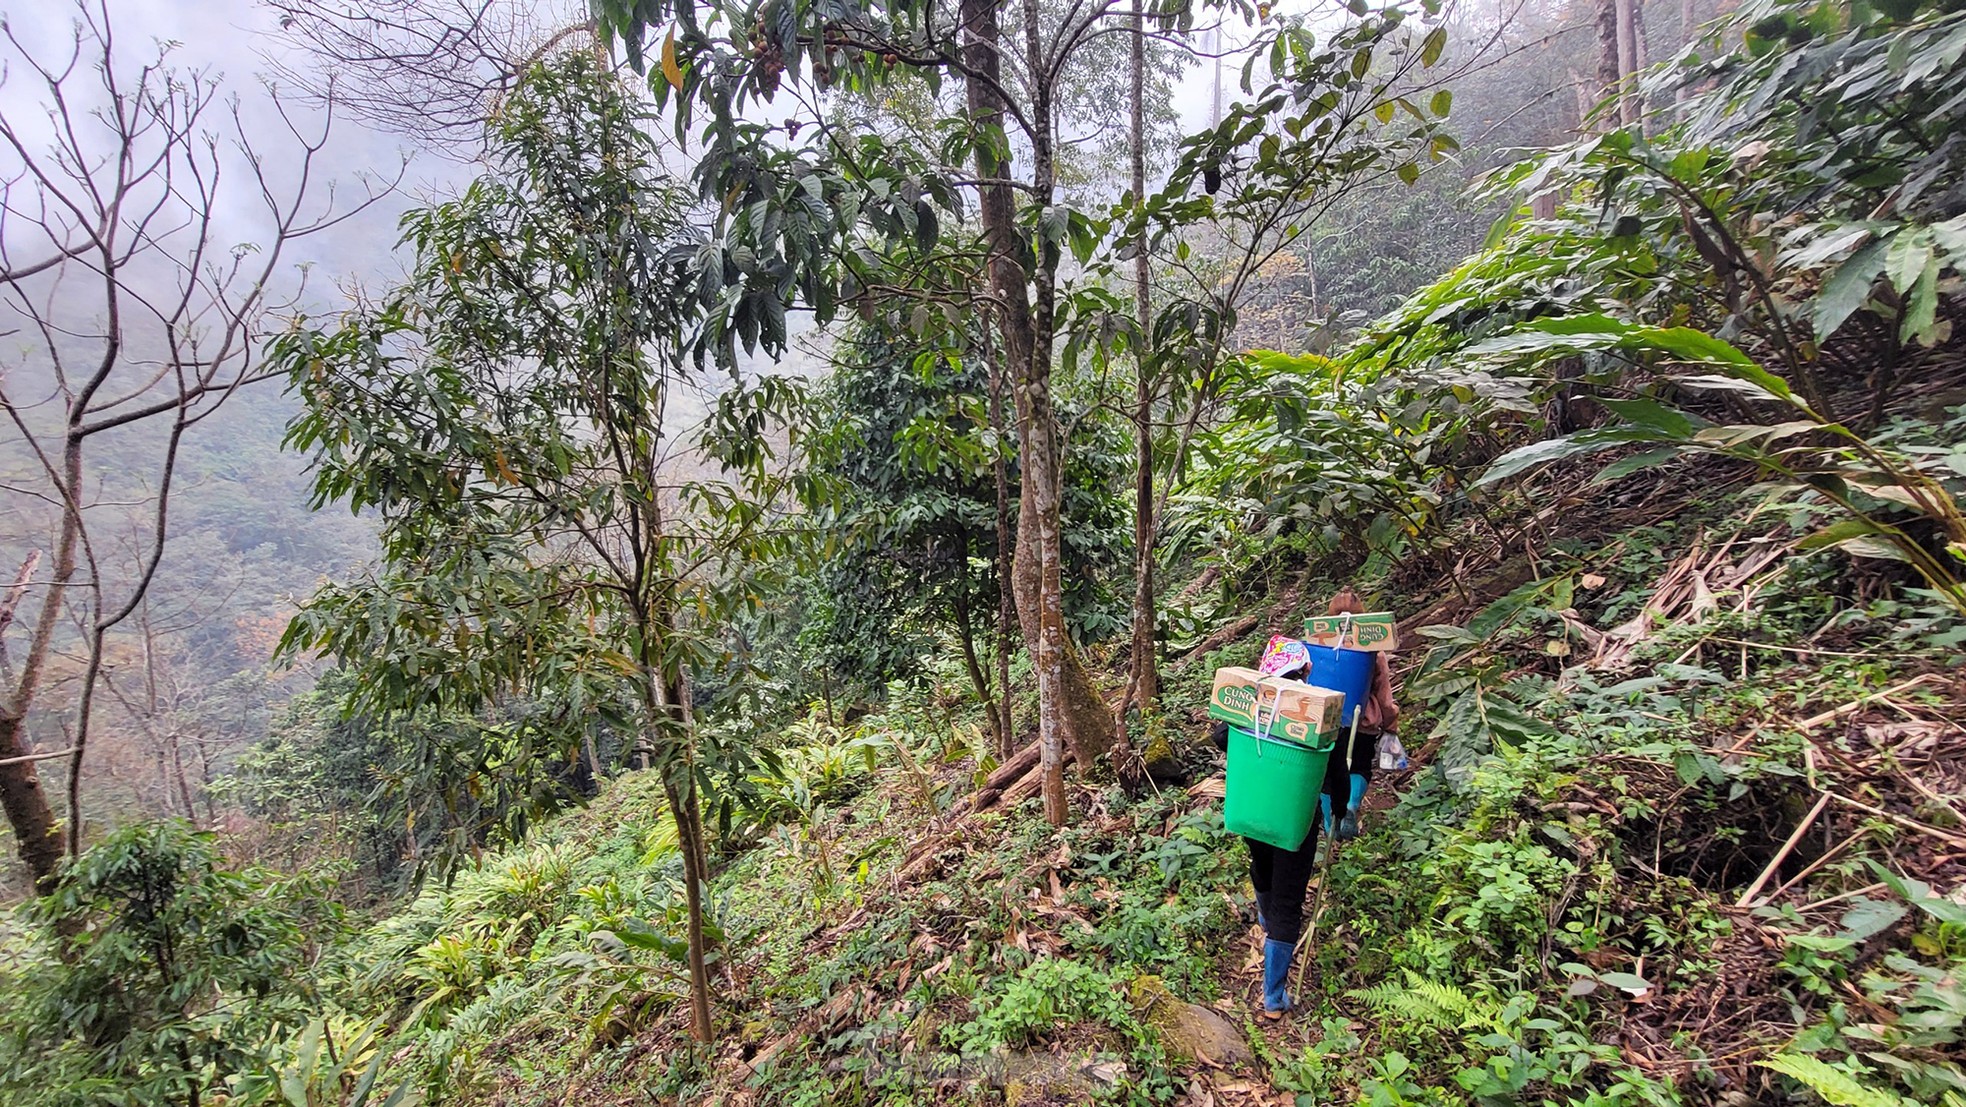 Xuyên rừng già chinh phục một trong tứ đại đỉnh núi Việt Nam ảnh 10